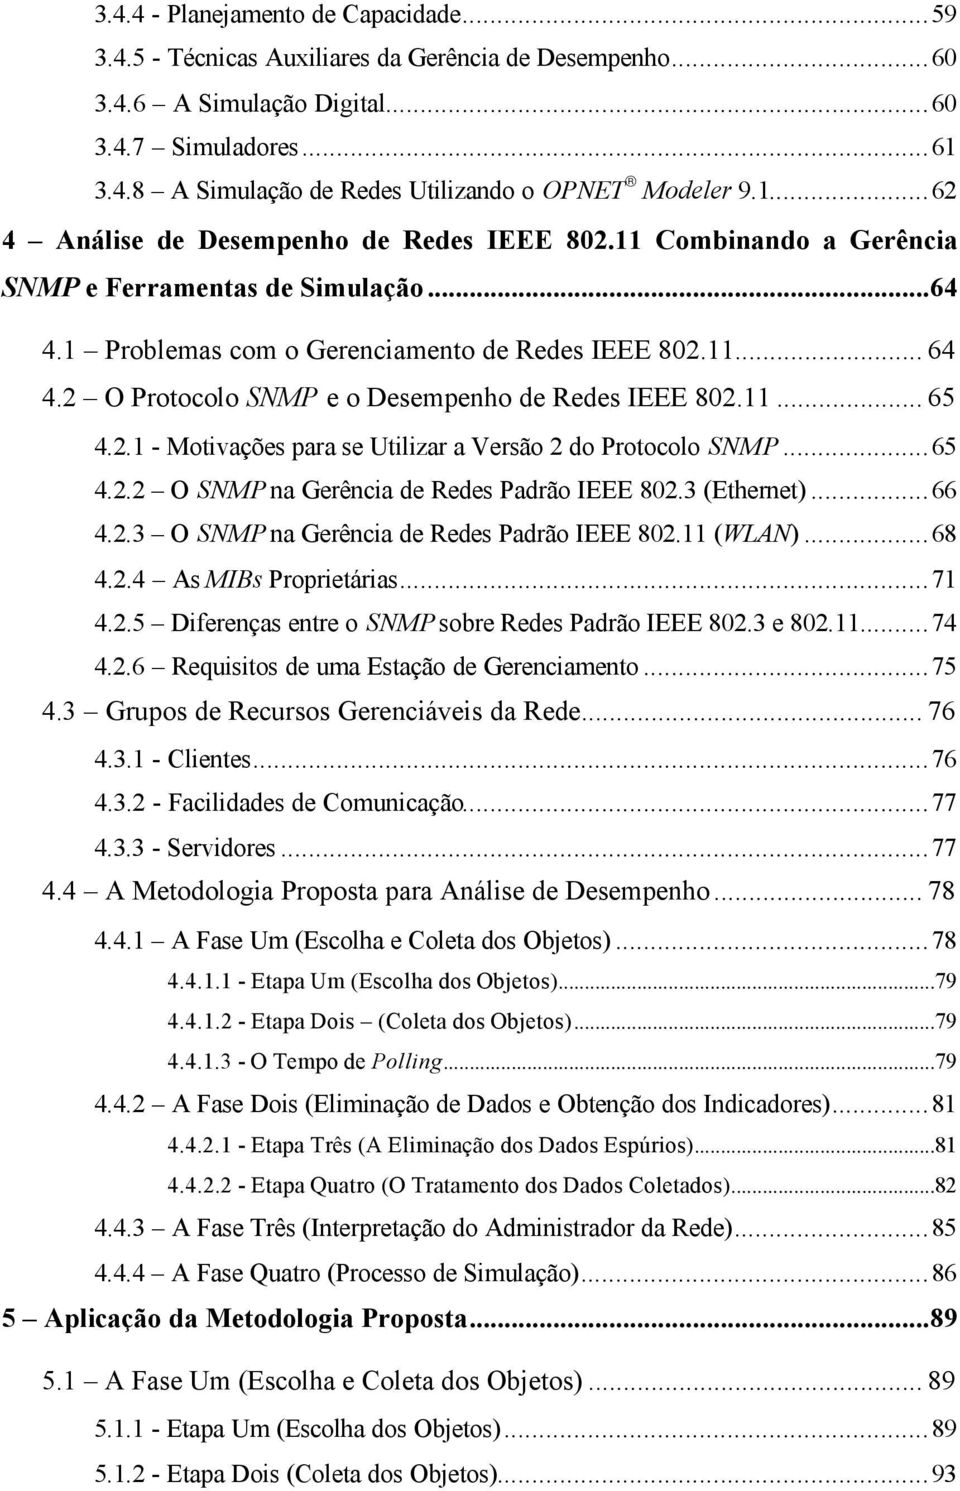 2 O Protocolo SNMP e o Desempenho de Redes IEEE 802.11... 65 4.2.1 - Motivações para se Utilizar a Versão 2 do Protocolo SNMP...65 4.2.2 O SNMP na Gerência de Redes Padrão IEEE 802.3 (Ethernet)...66 4.